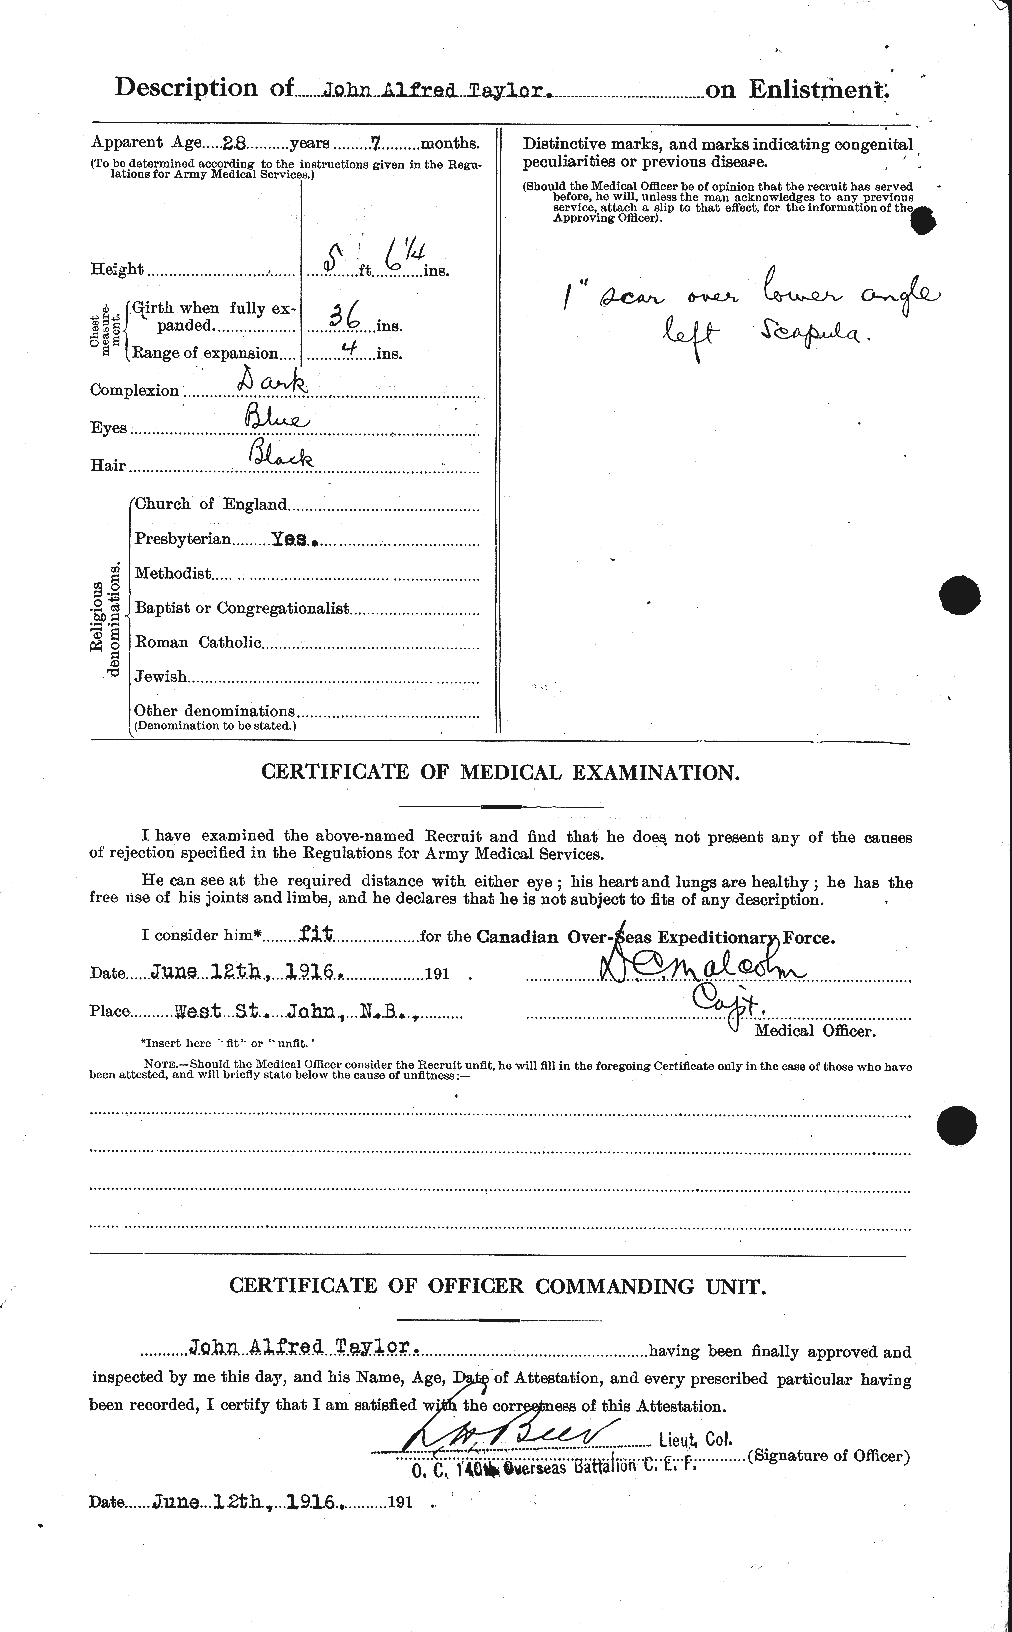 Dossiers du Personnel de la Première Guerre mondiale - CEC 627045b